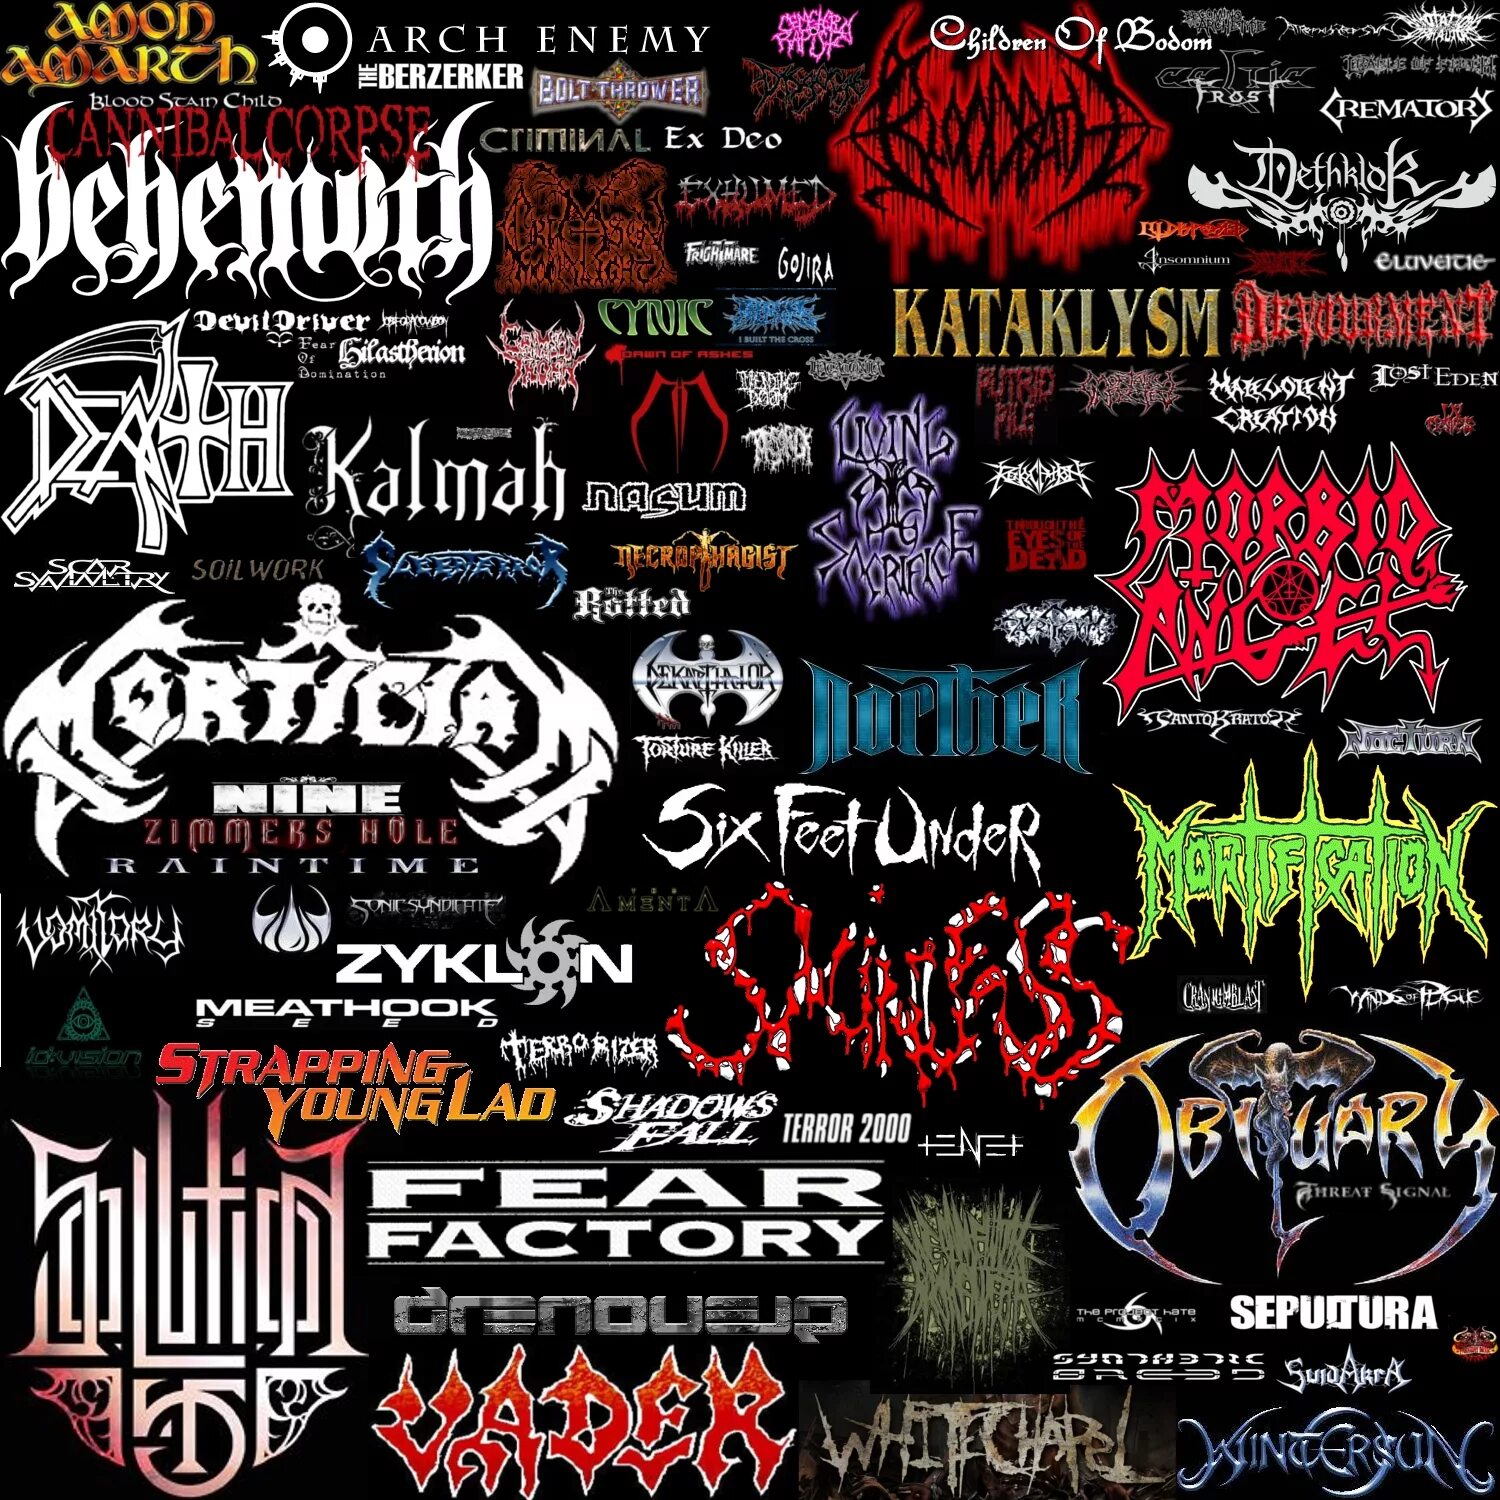 Евро метал групп. Трэш метал. Логотипы метал групп. Thrash Metal группы. Thrash Metal logo.